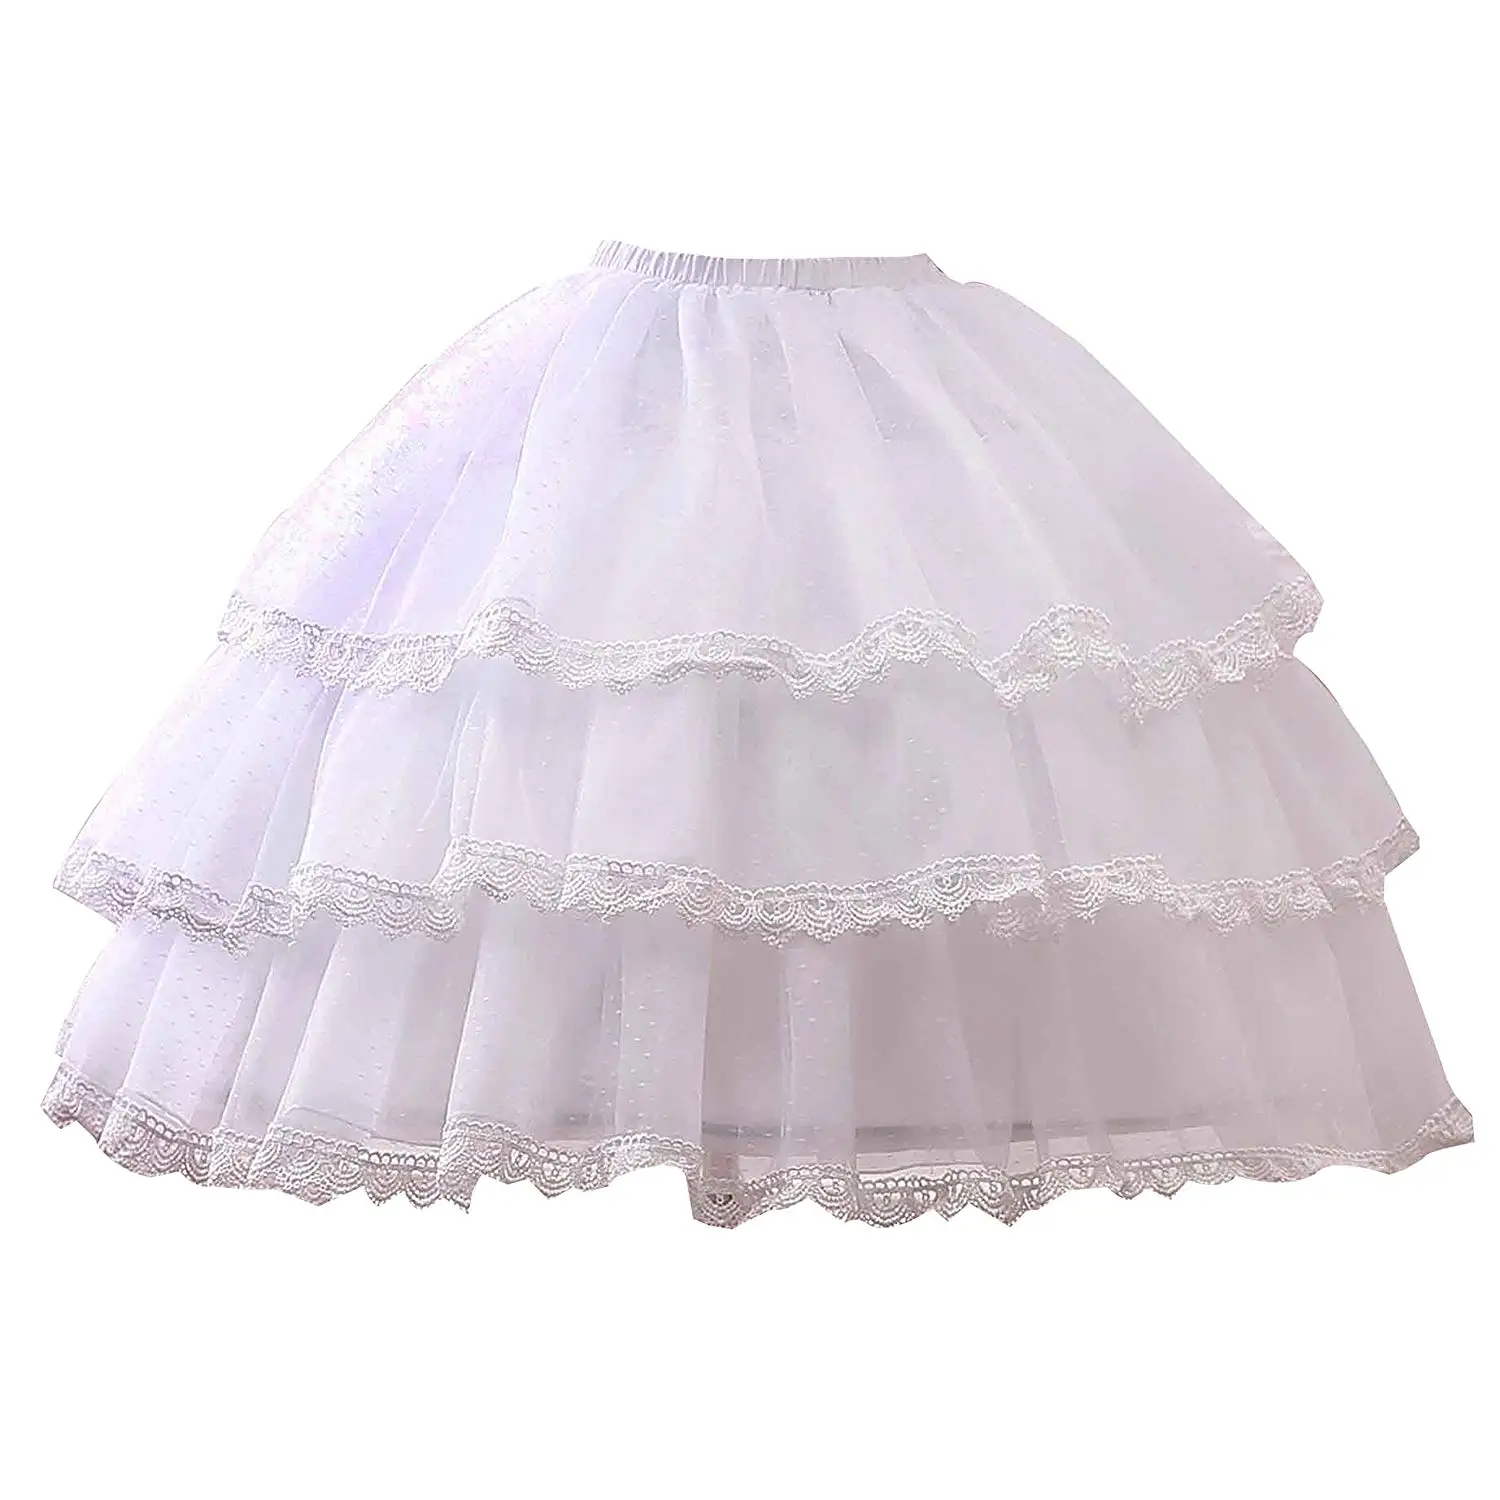 Cheap Dress Hoop Skirt, find Dress Hoop Skirt deals on line at Alibaba.com